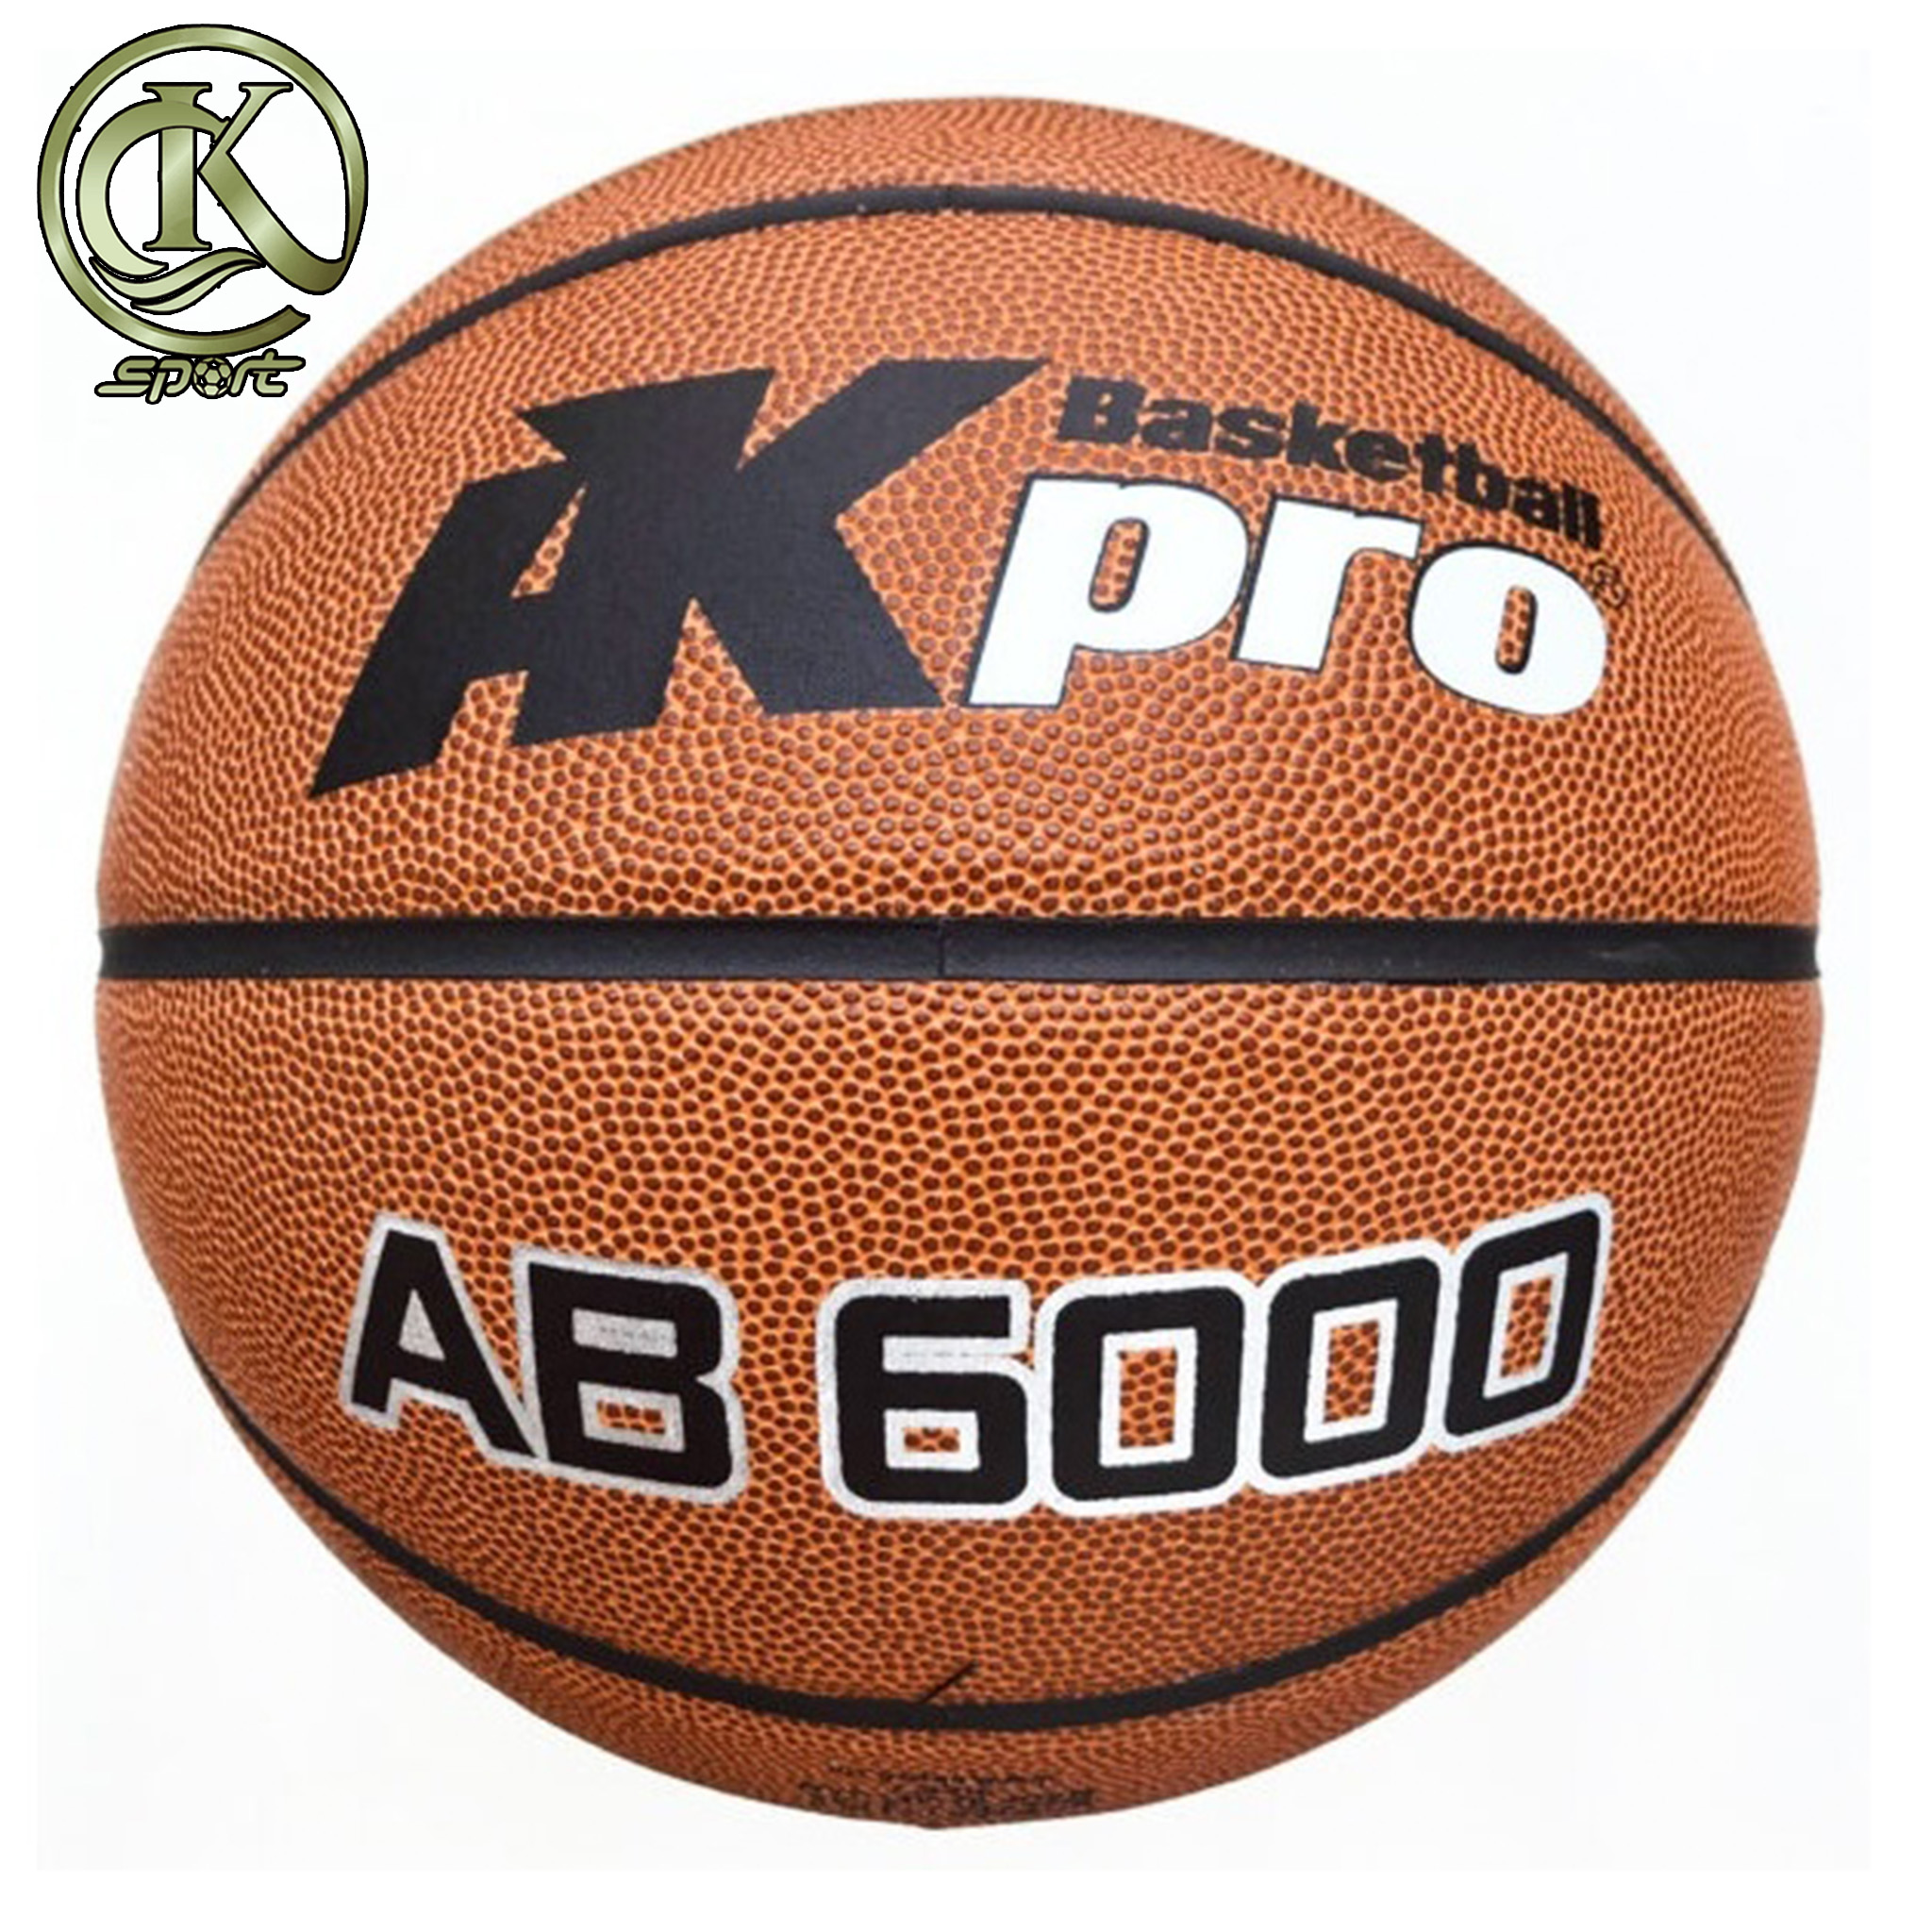 Quả bóng rổ da AKpro AB6000 số 7  da PU dai bền, có độ nảy ổn định, bóng